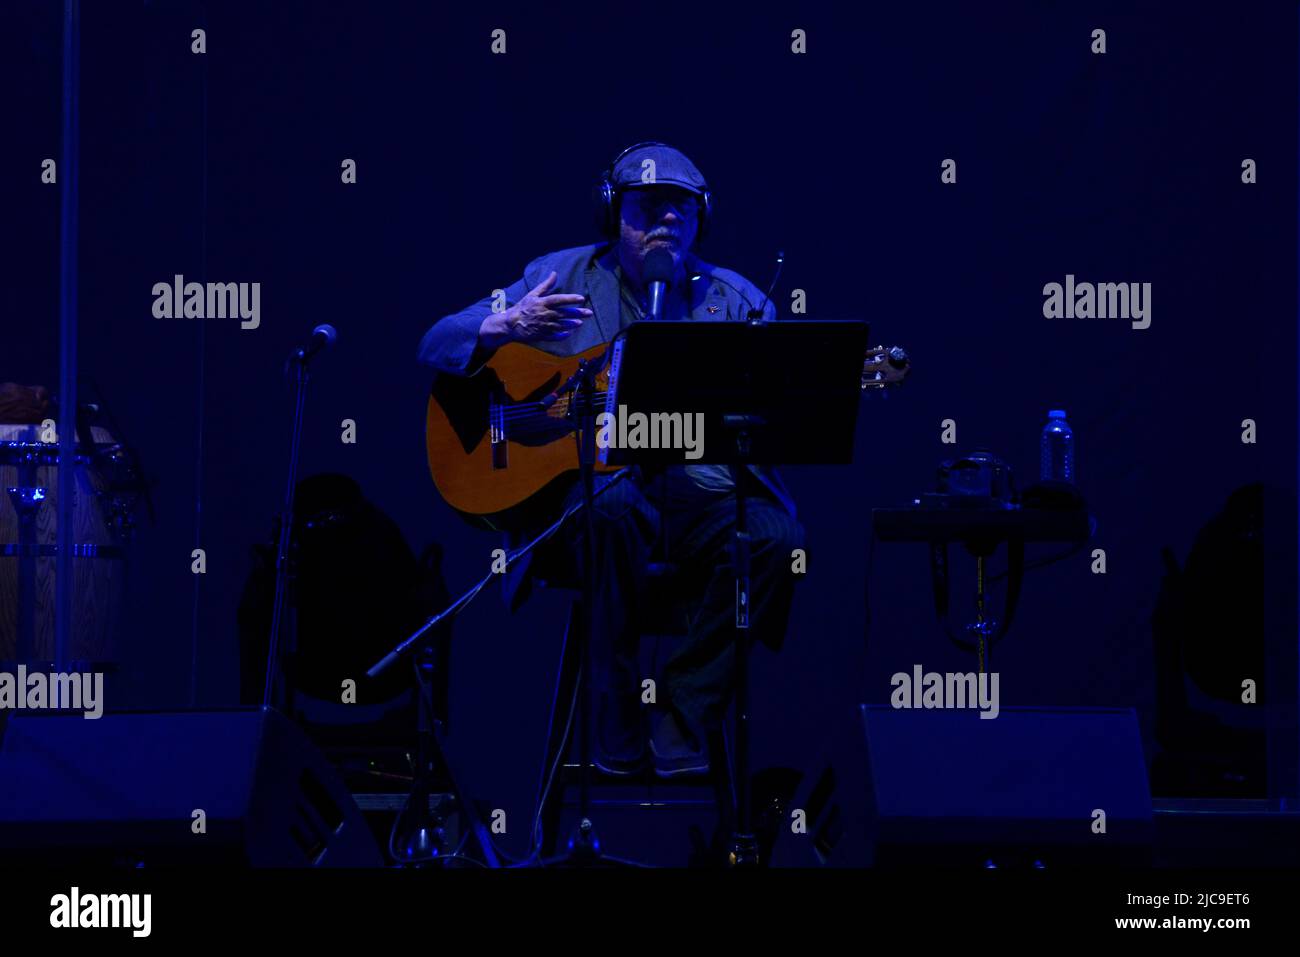 Nicht exklusiv: 10. Juni 2022, Mexiko-Stadt, Mexiko: Der kubanische Trova-Sänger und -Songwriter Silvio Rodríguez singt auf der Bühne während eines kostenlosen Konzerts in Mexiko-Stadt Stockfoto